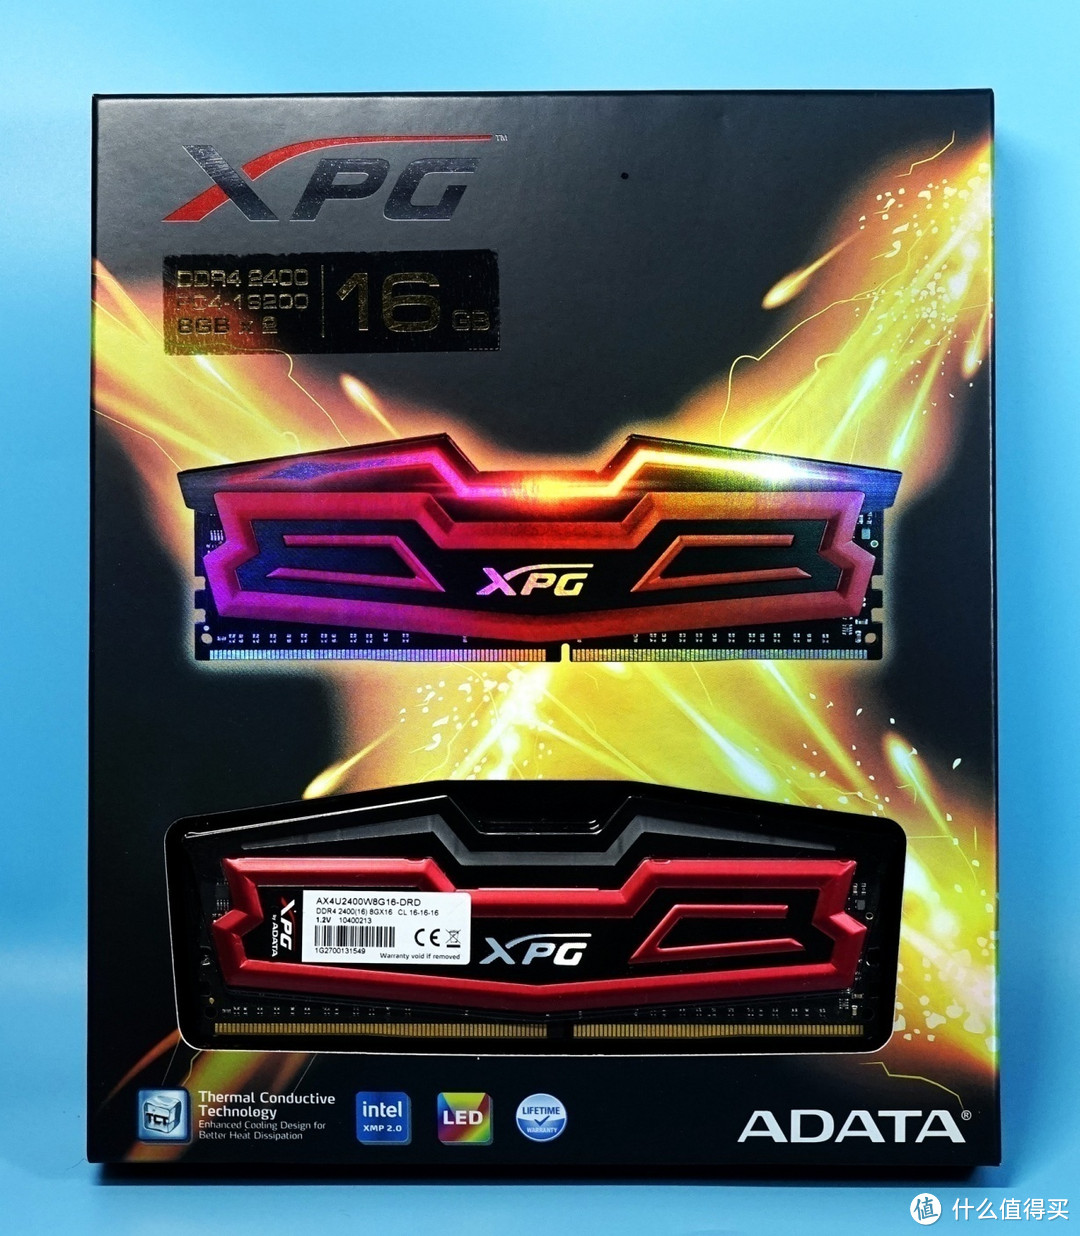 ADATA 威刚 XPG DDR4 2400 灯条内存 详测及超频设置经验分享